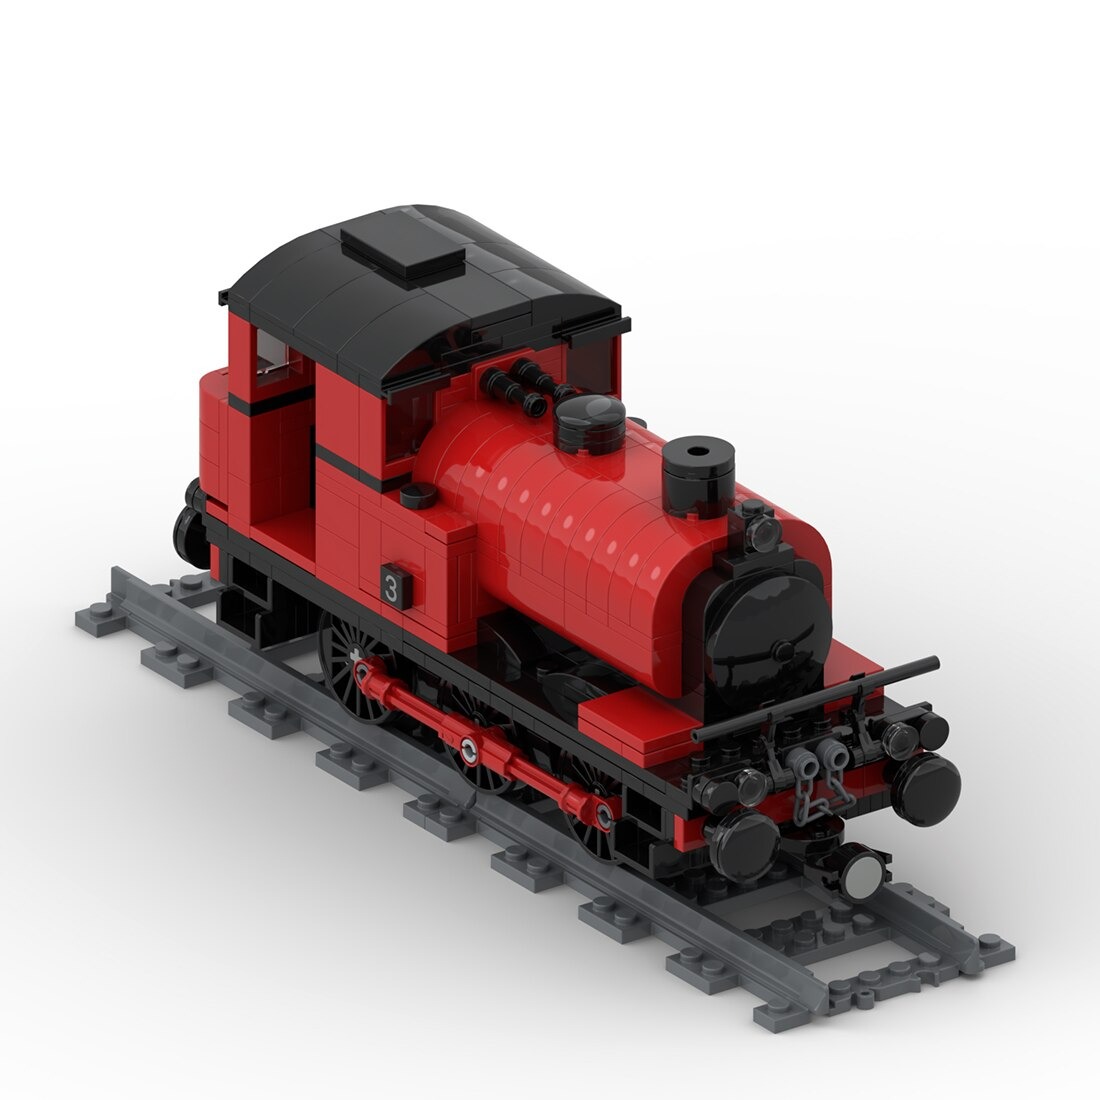 Saddle Tank Engine Train Moc 42439 2